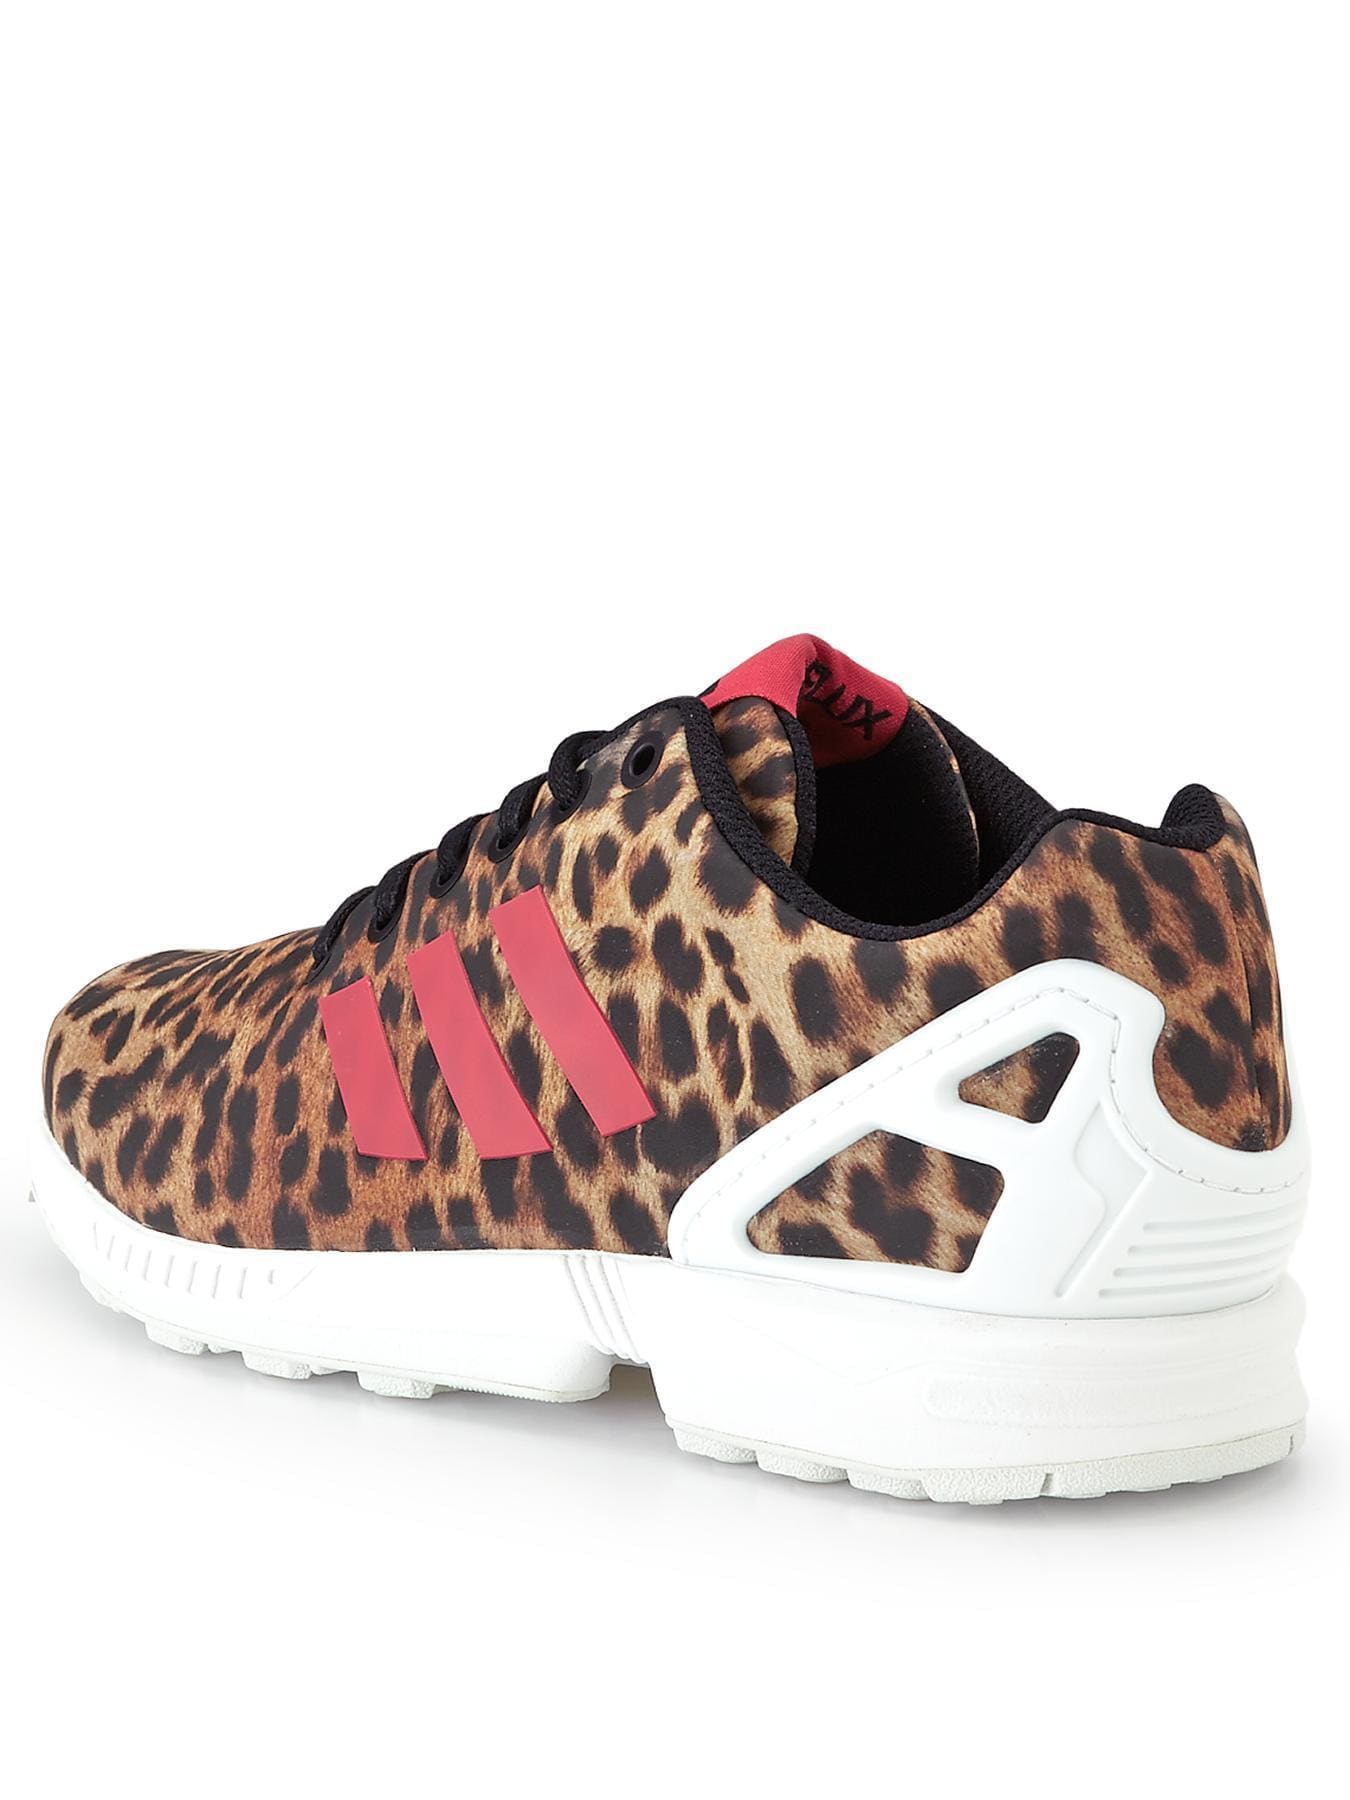 adidas zx leopard print